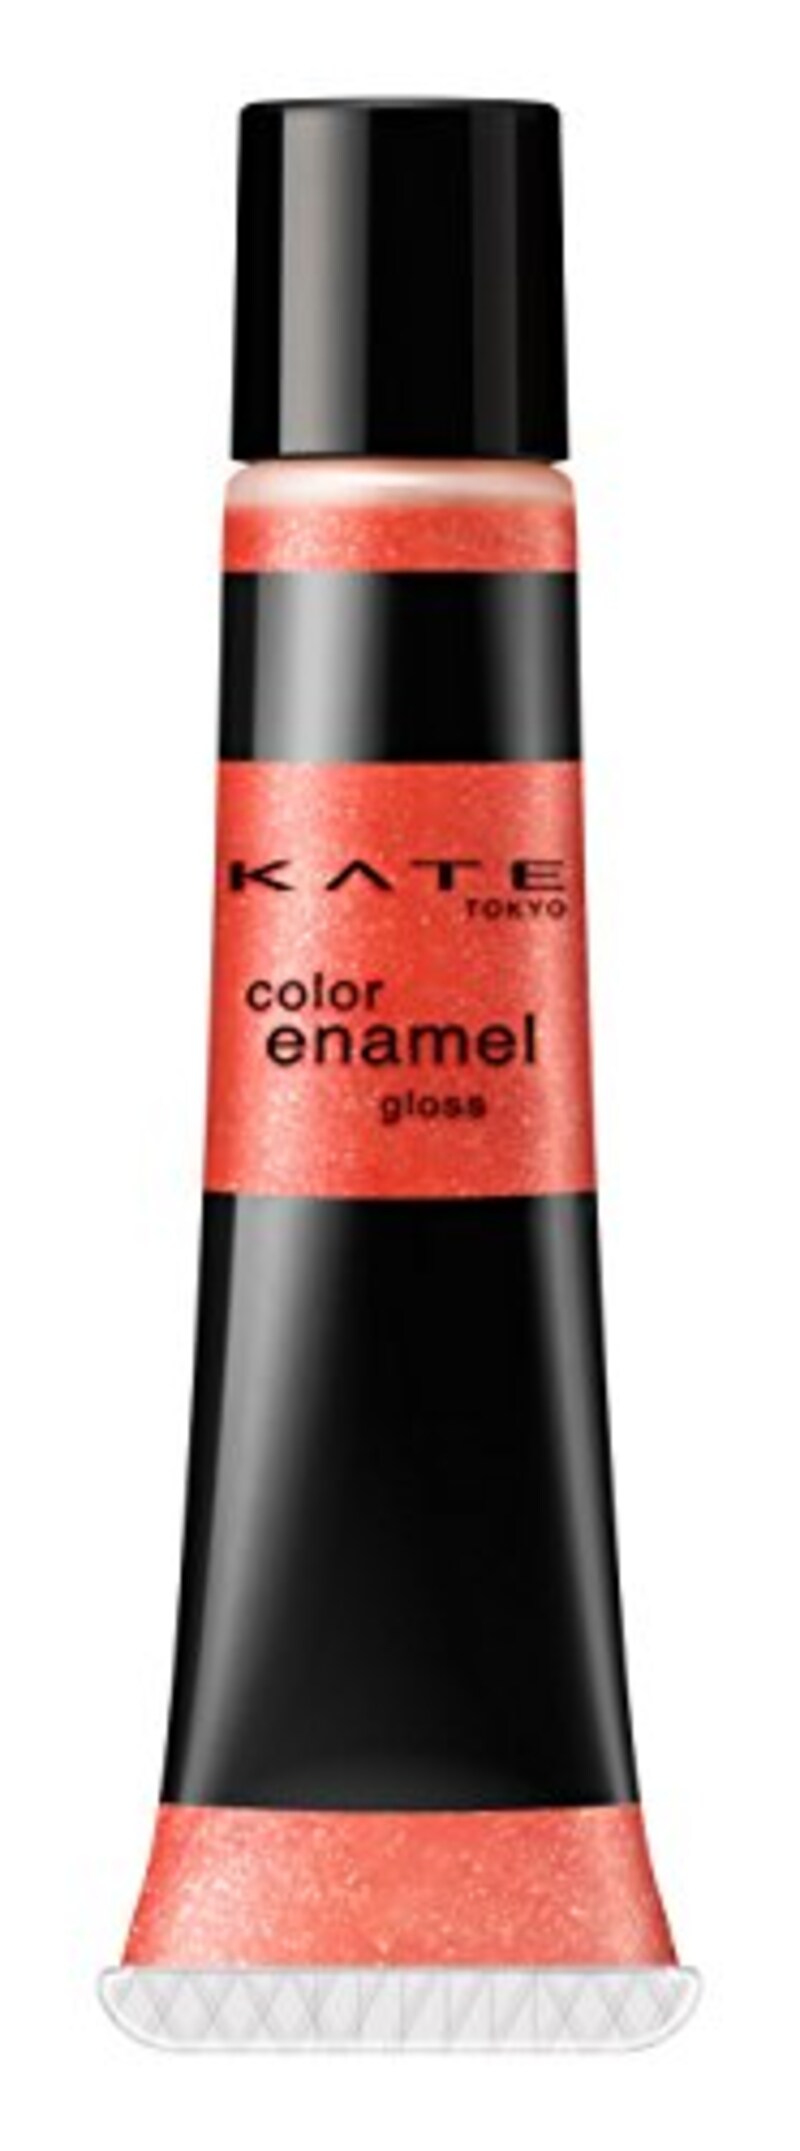 カネボウ化粧品,KATE（ケイト）カラーエナメルグロス